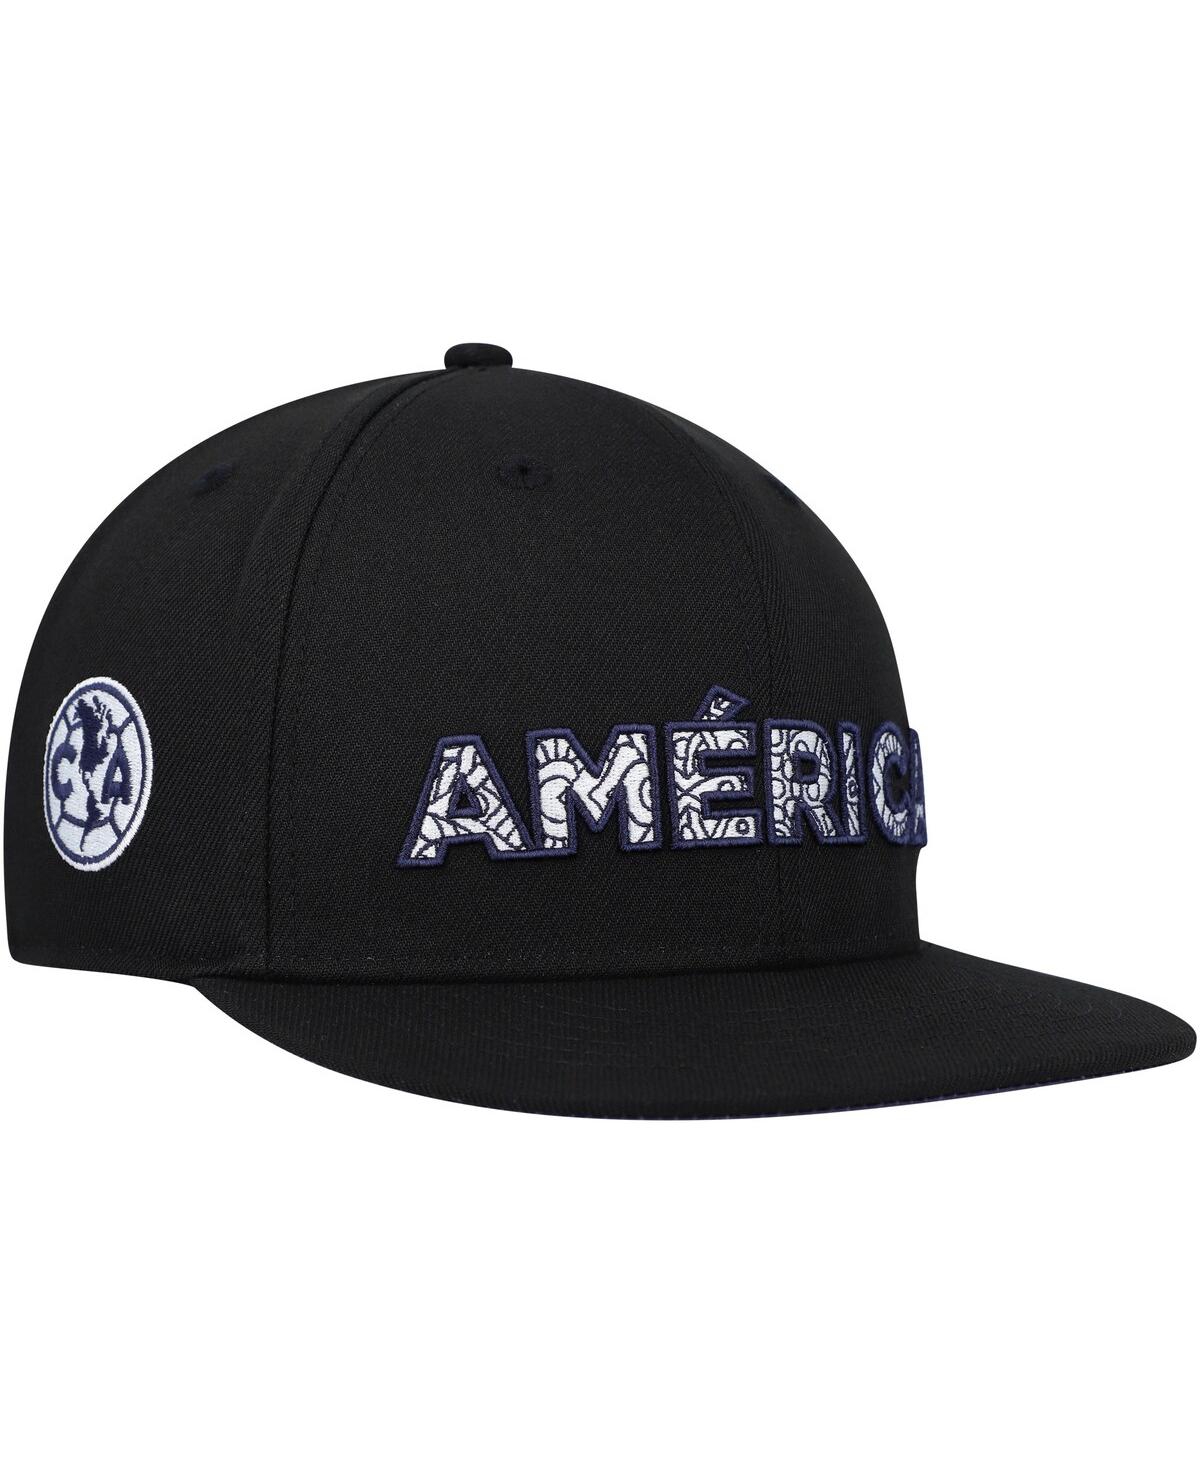 Shop Fan Ink Men's Black Club America Bode Snapback Hat